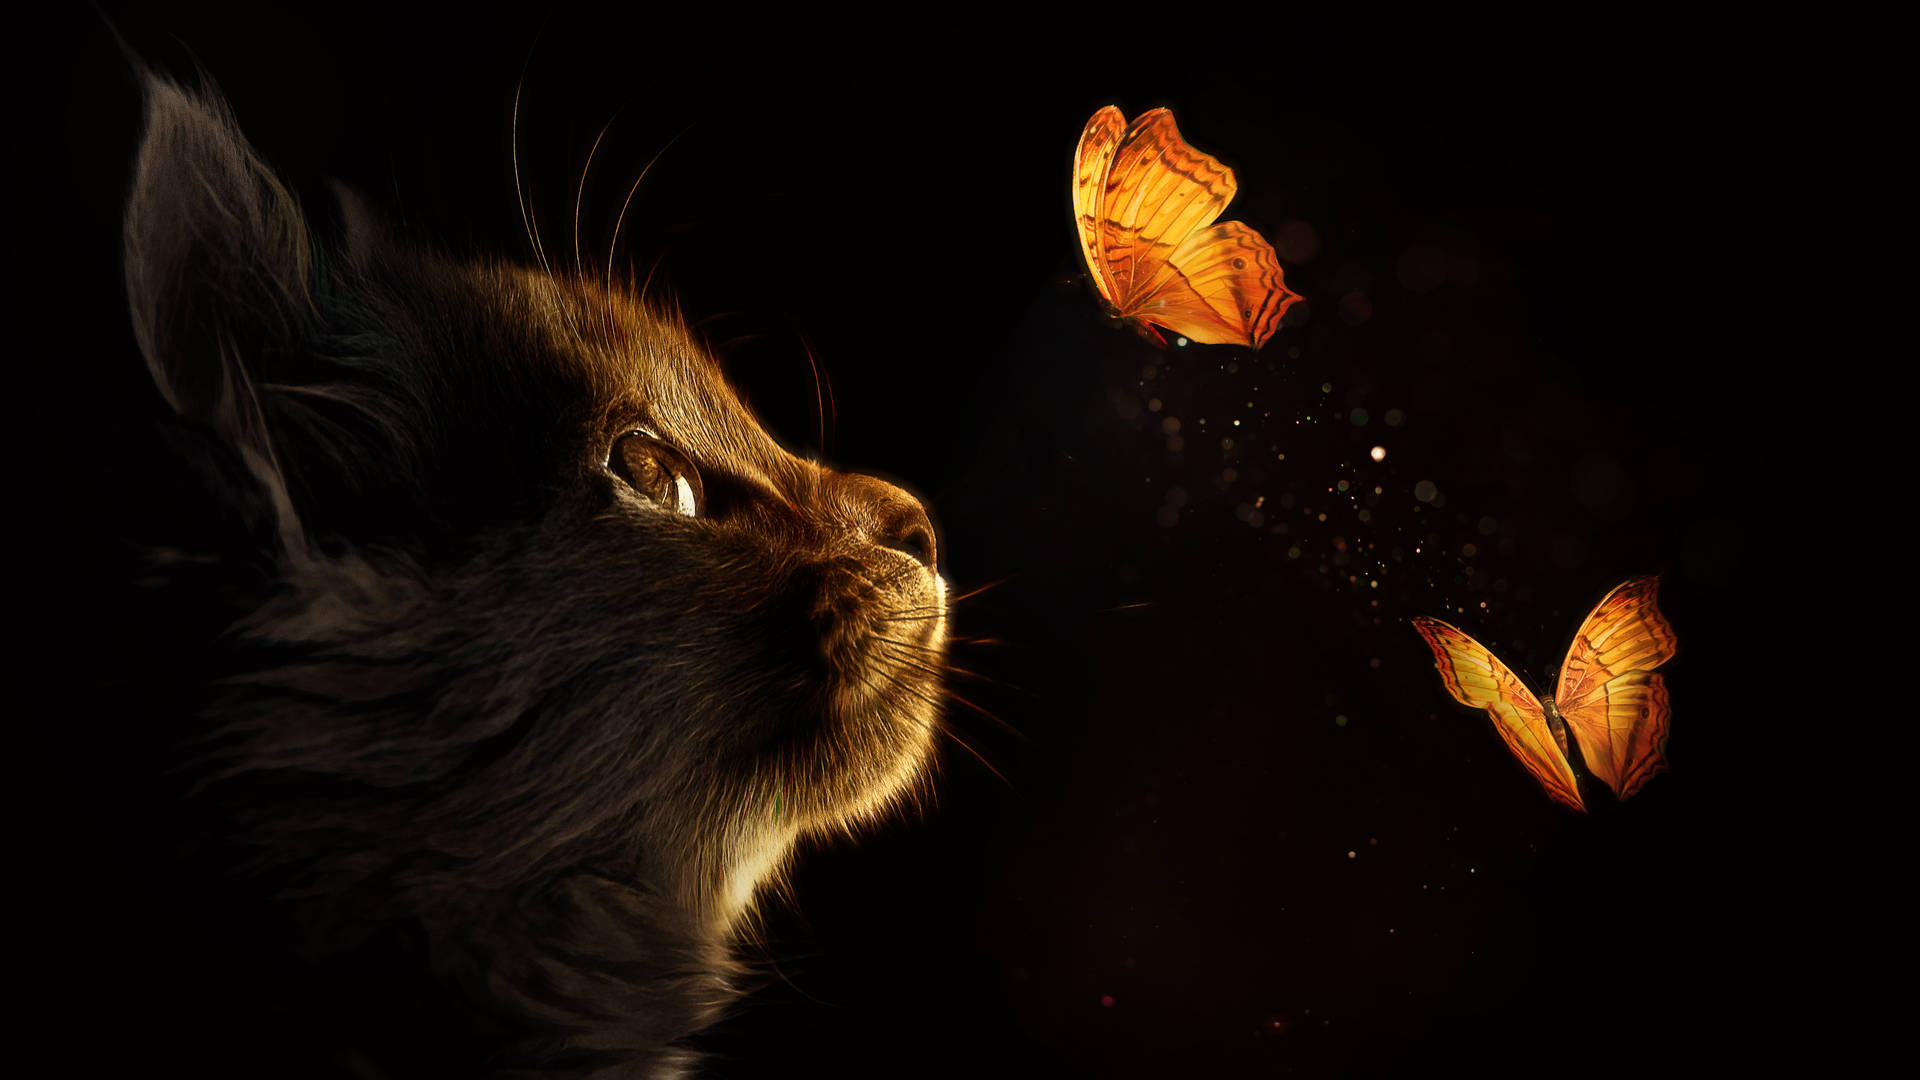 Caption: Mystical Black Art - Kitten amidst Butterflies Wallpaper